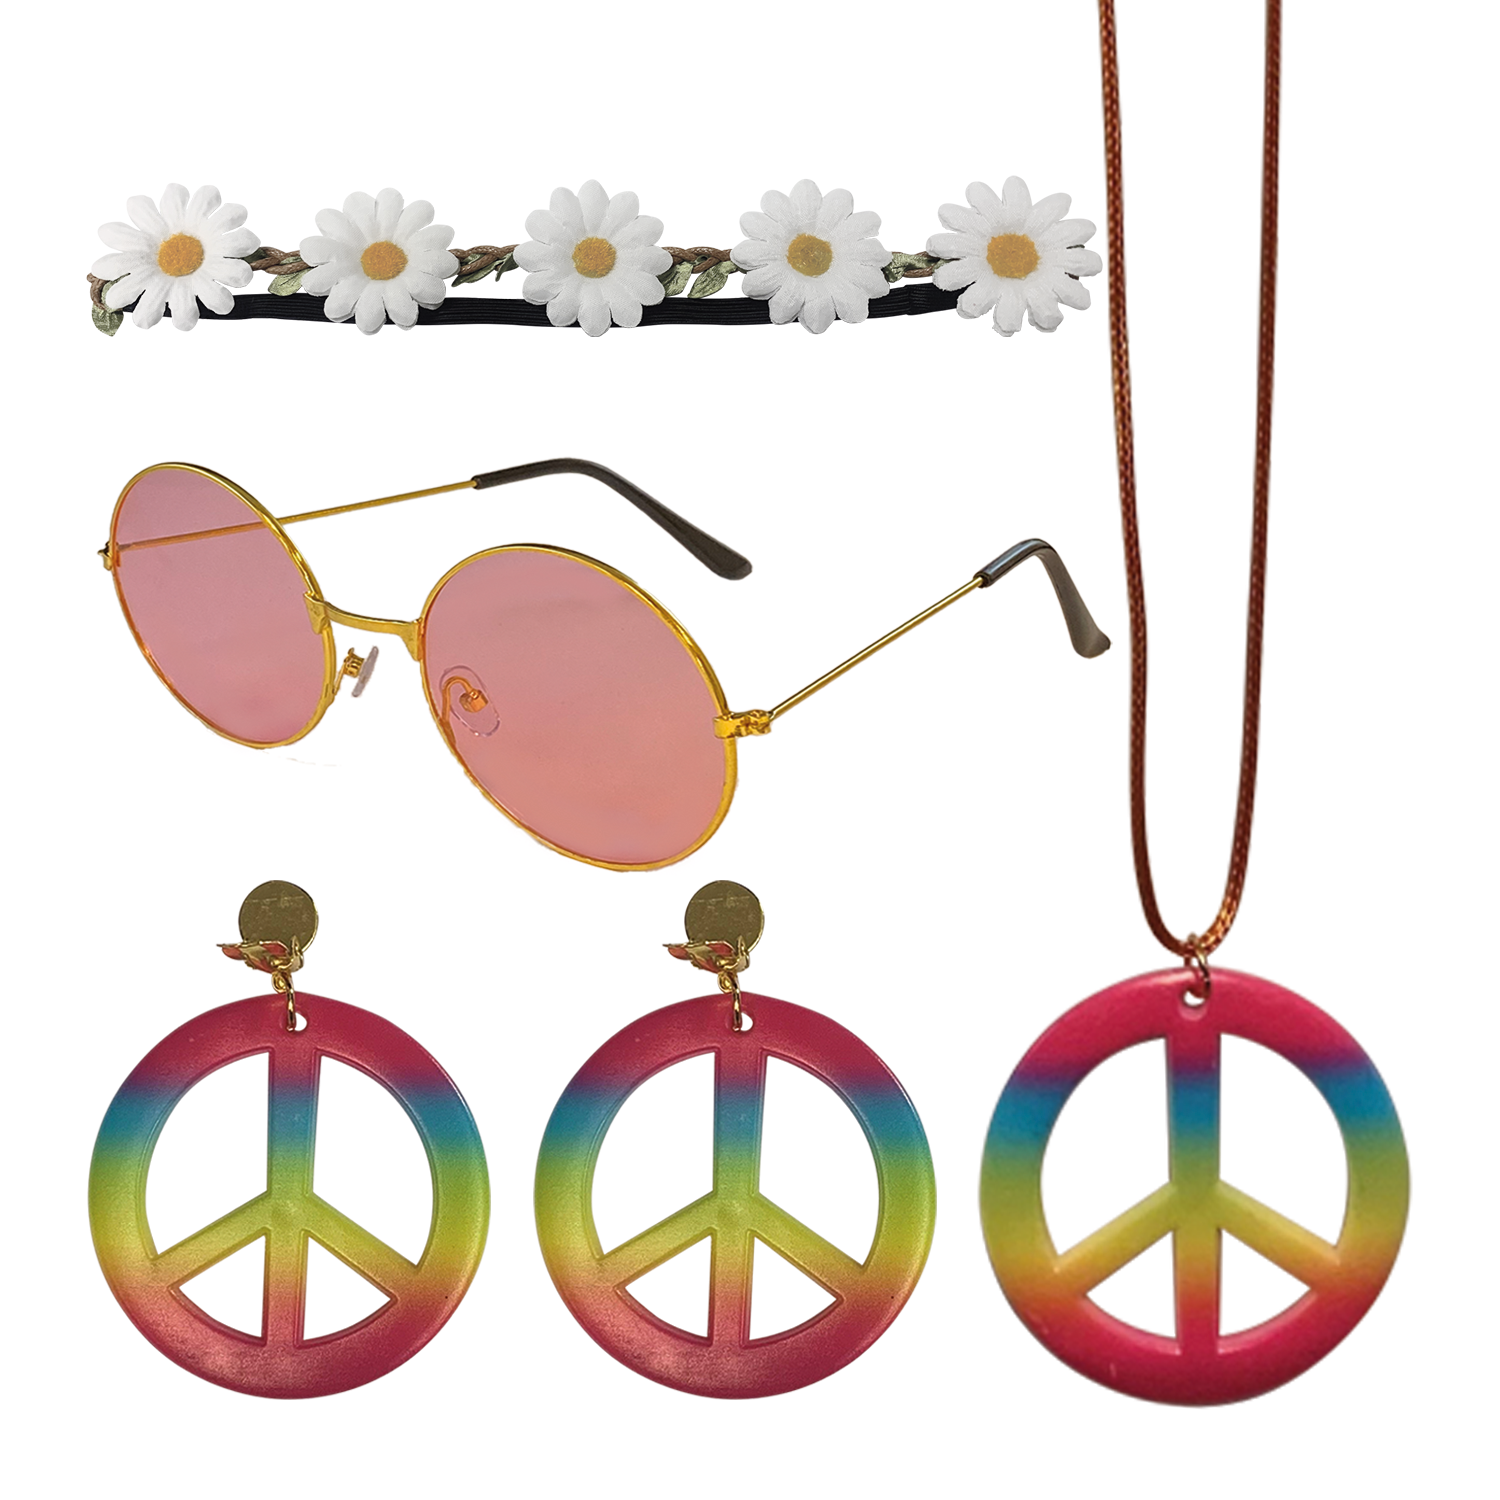 Carnaval accessoireset – Hippie outfit set